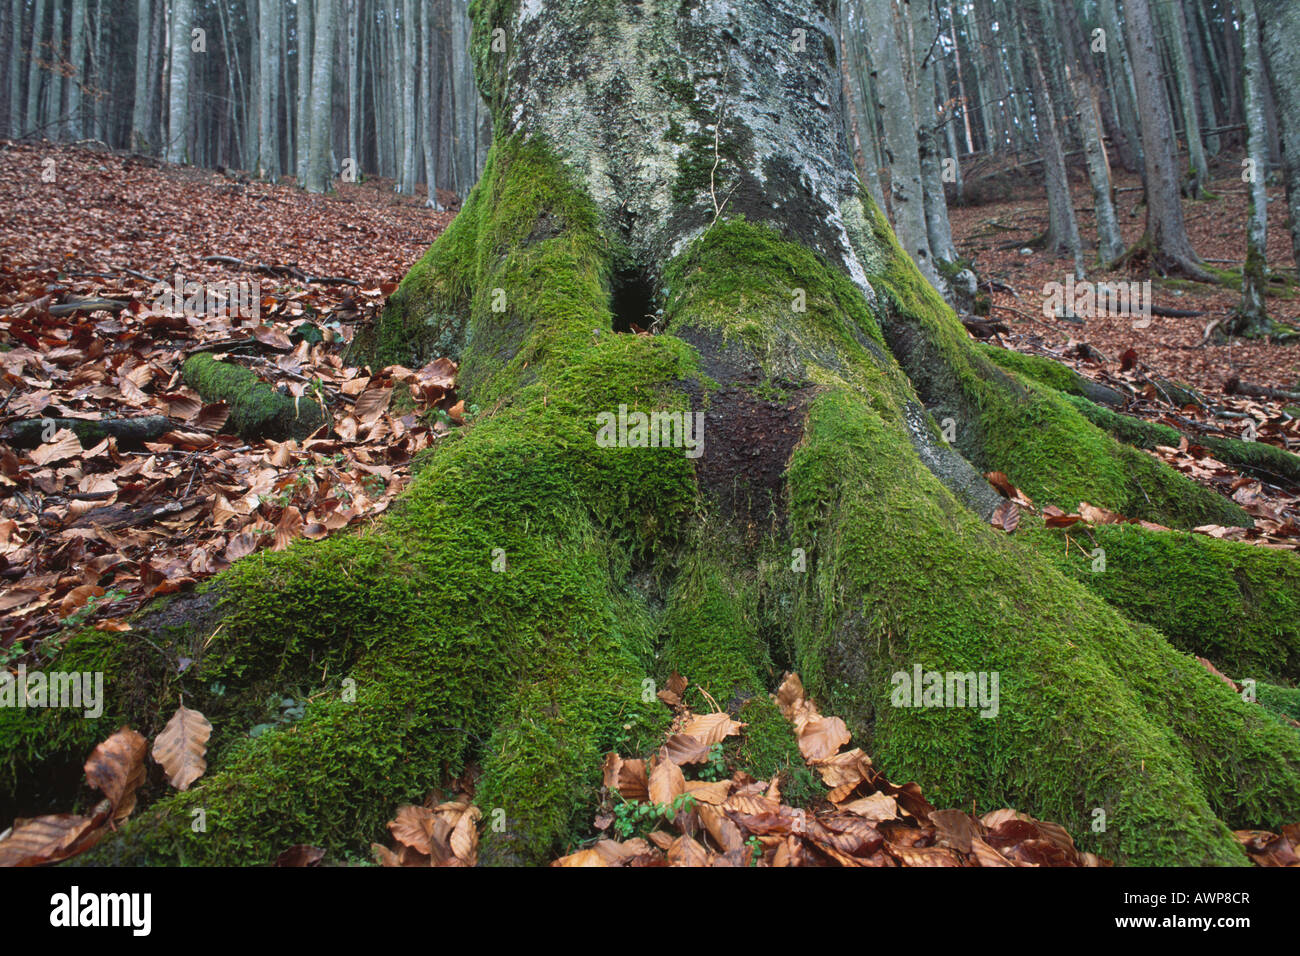 Cubiertos de musgo de un tronco común de haya (Fagus sylvatica) en un bosque de hayas, Norte de Tirol, Austria, Europa Foto de stock